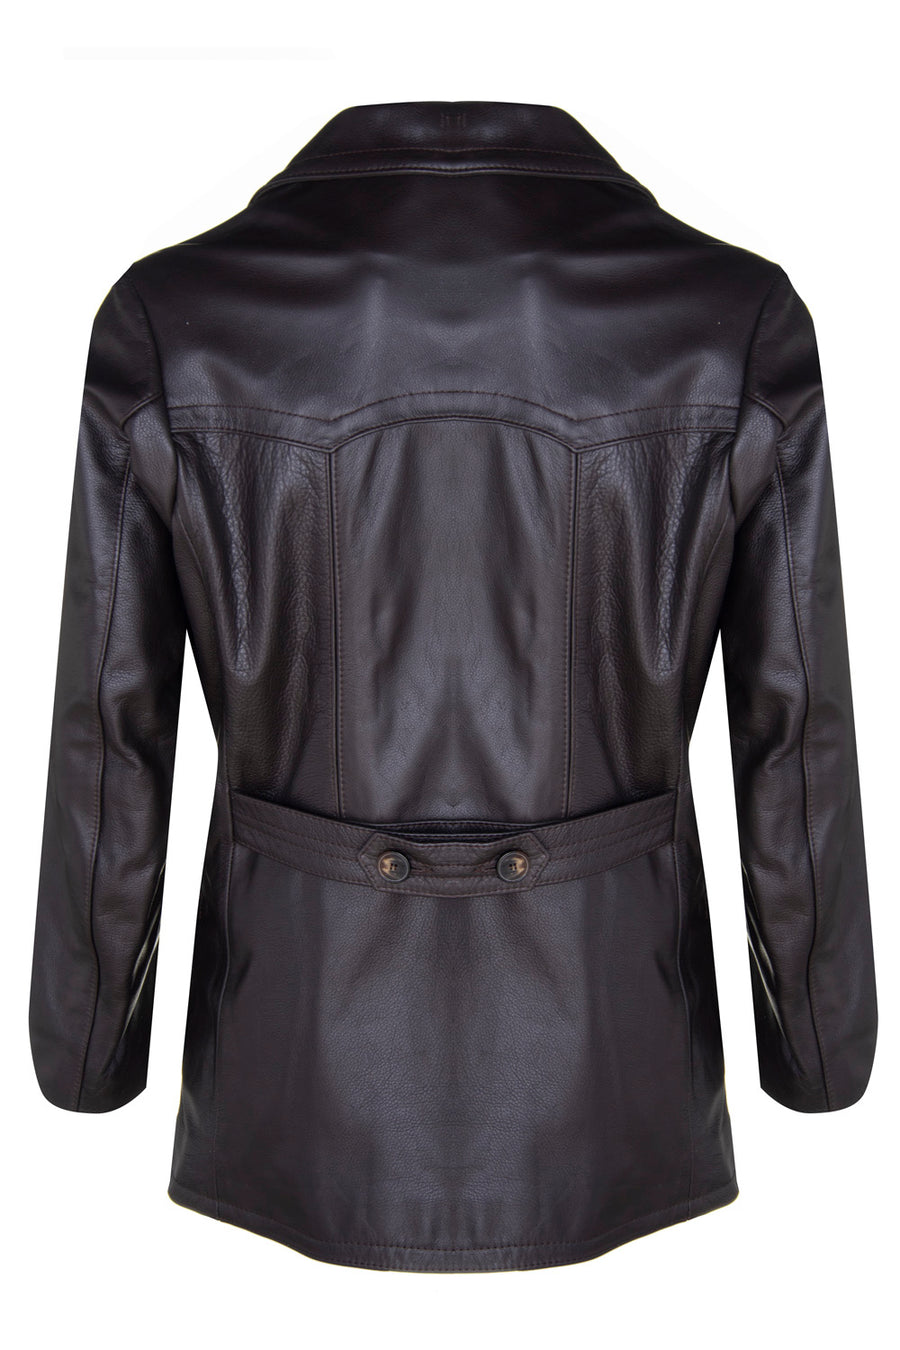 Buy David Jones Women Grey Shoulder Bag Grey Online @ Best Price in India